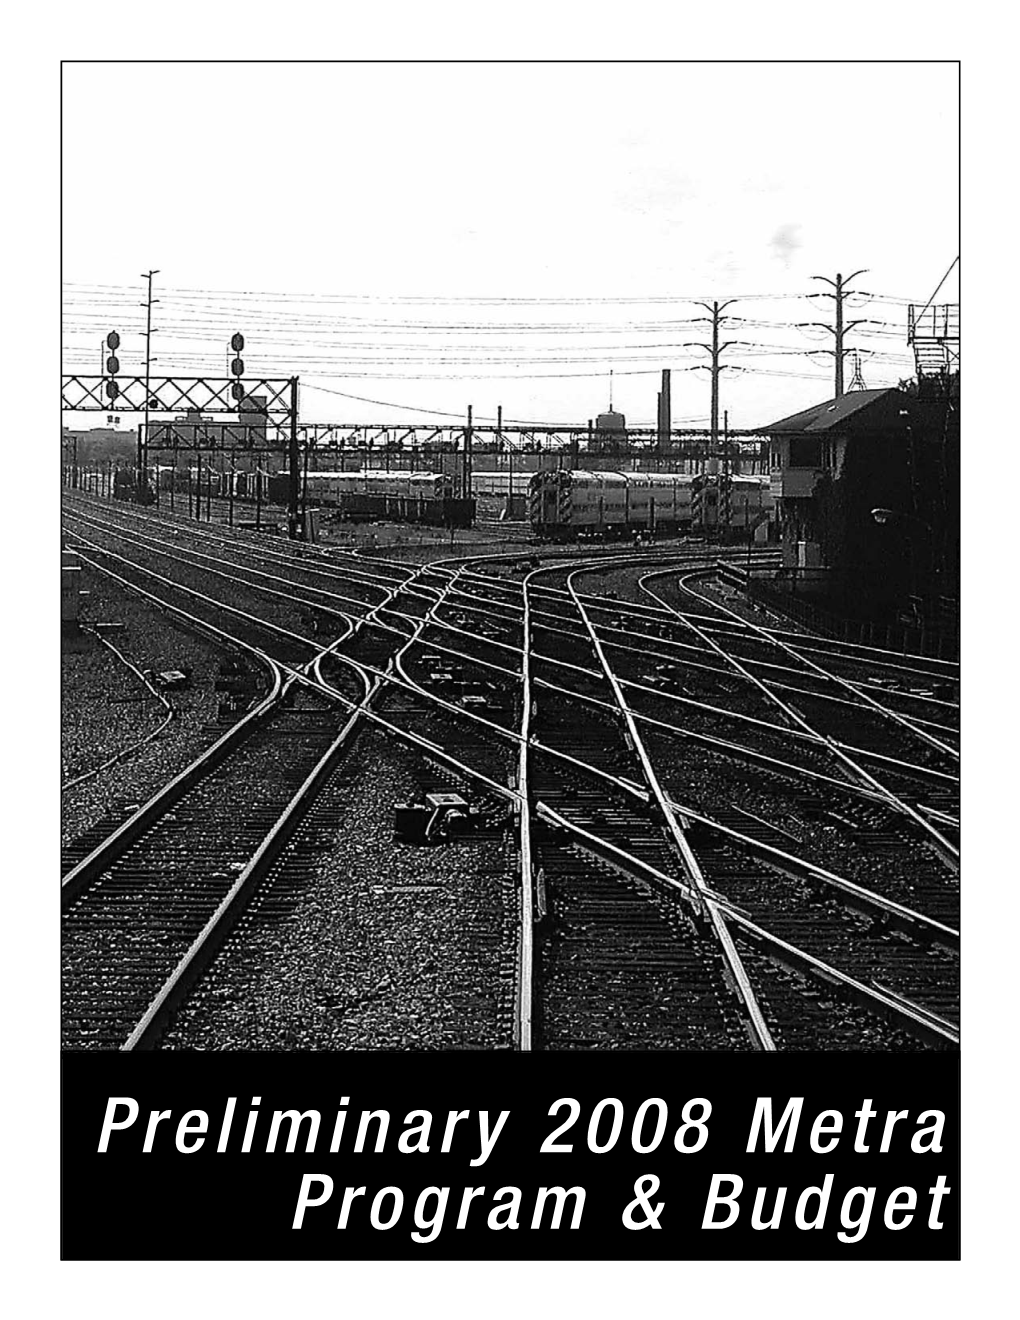 Preliminary 2008 Metra Program & Budget